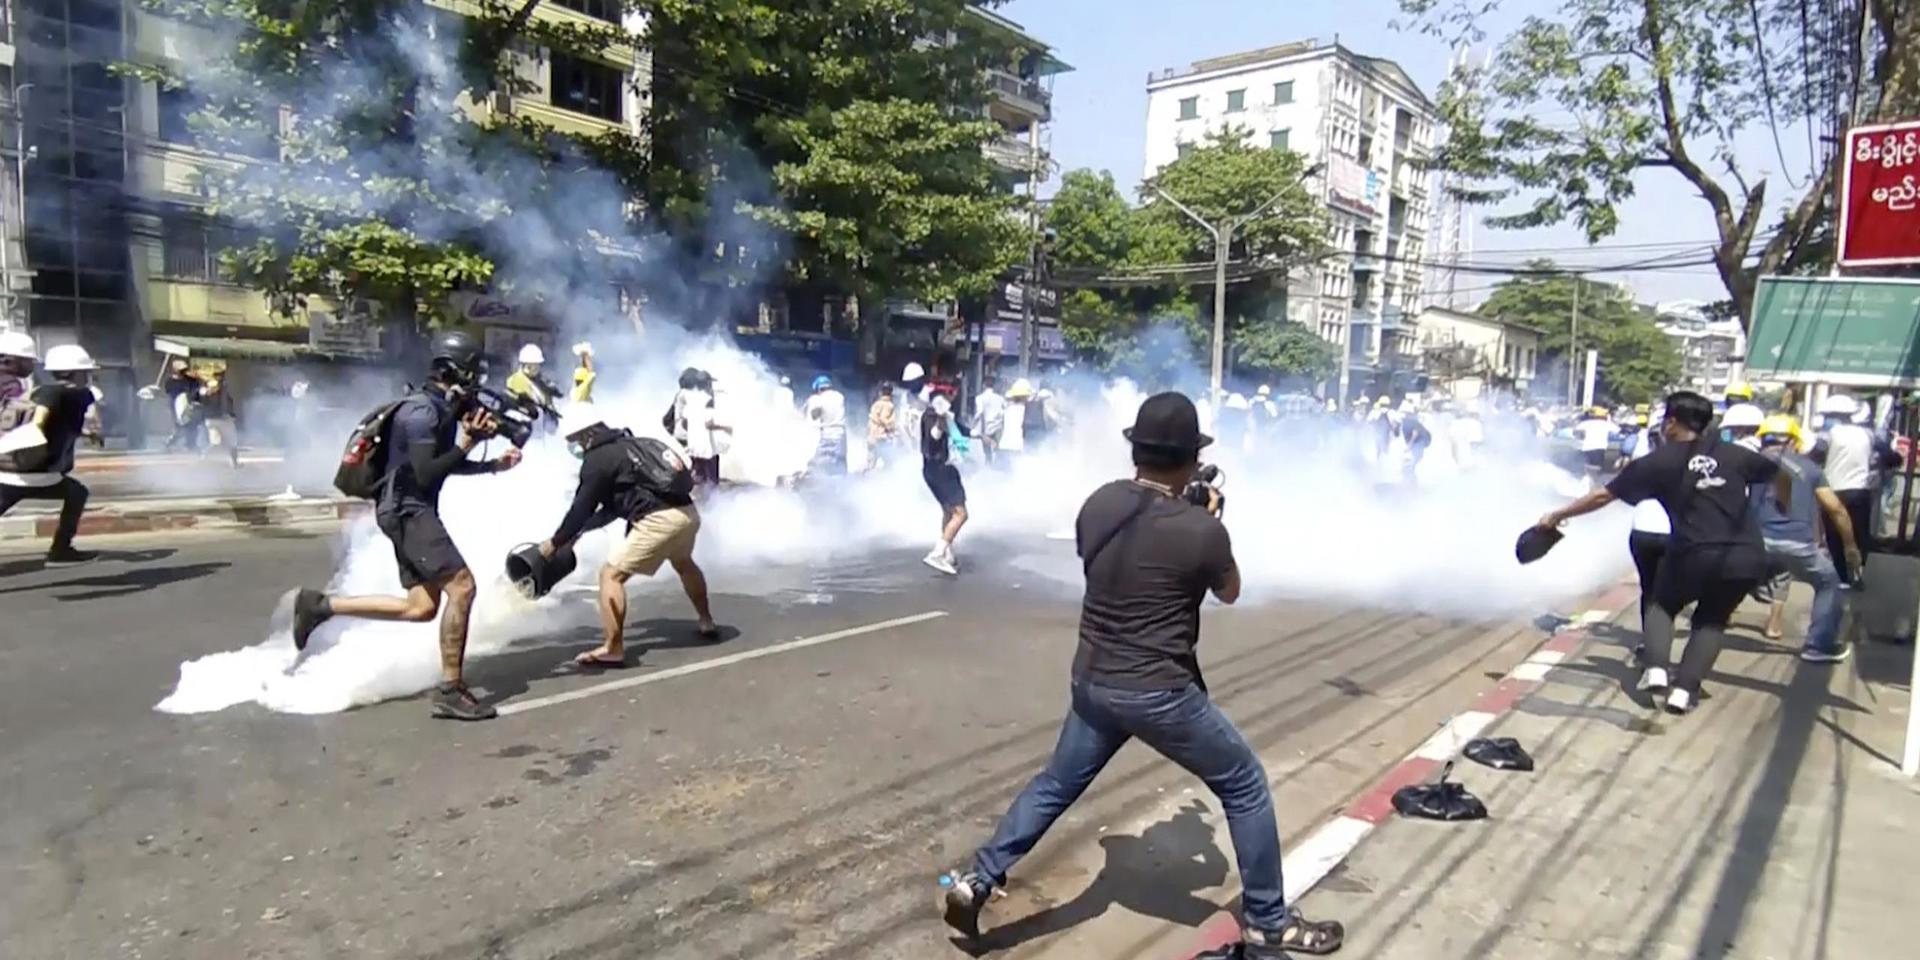 Polis i Rangoon använder tårgas mot demonstranter på måndagen.